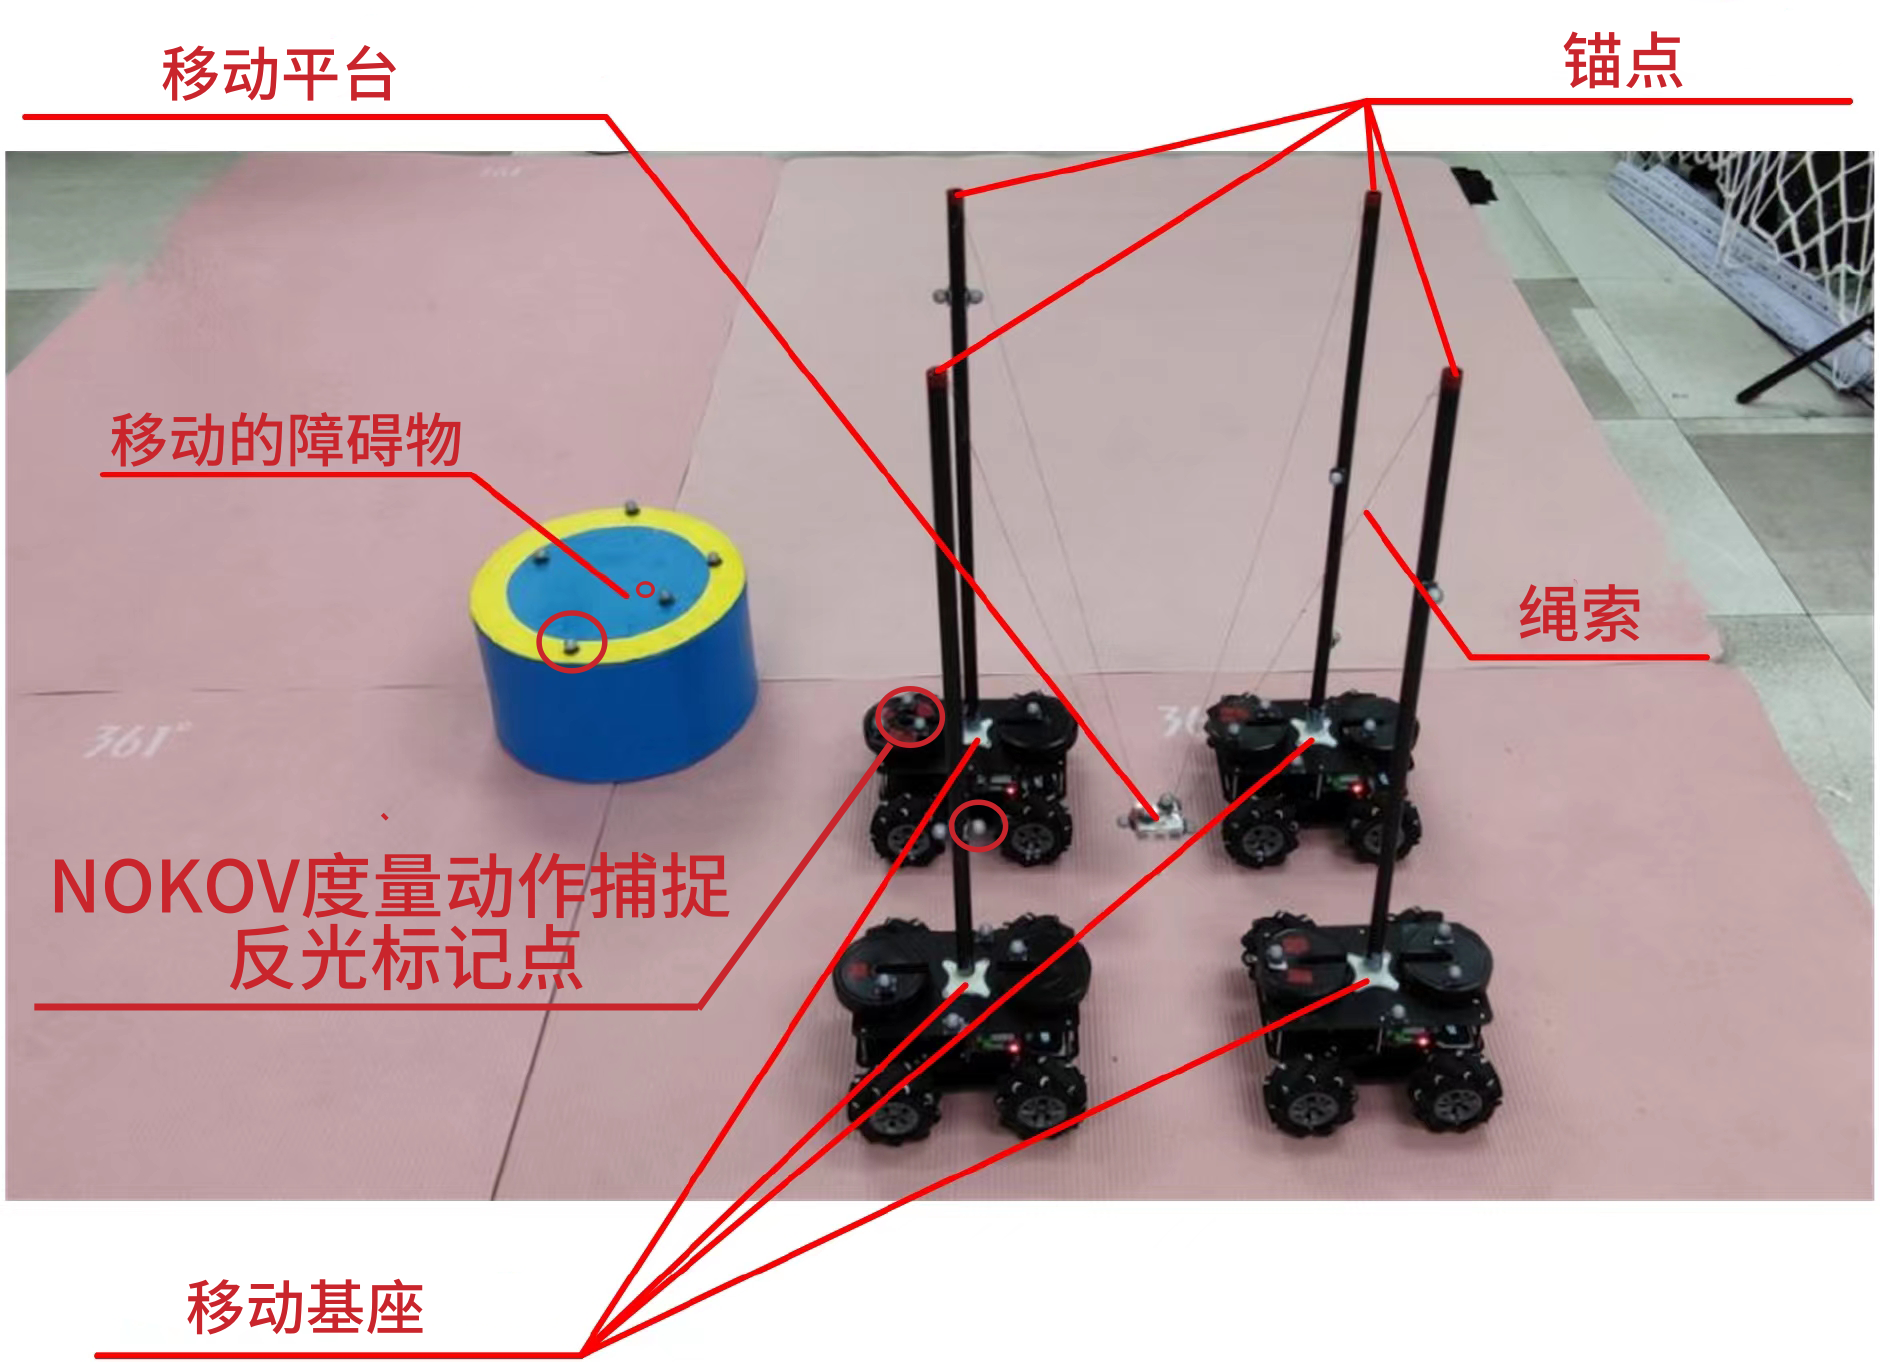 绳牵引并联机器人在规划轨迹中遇到动态障碍物